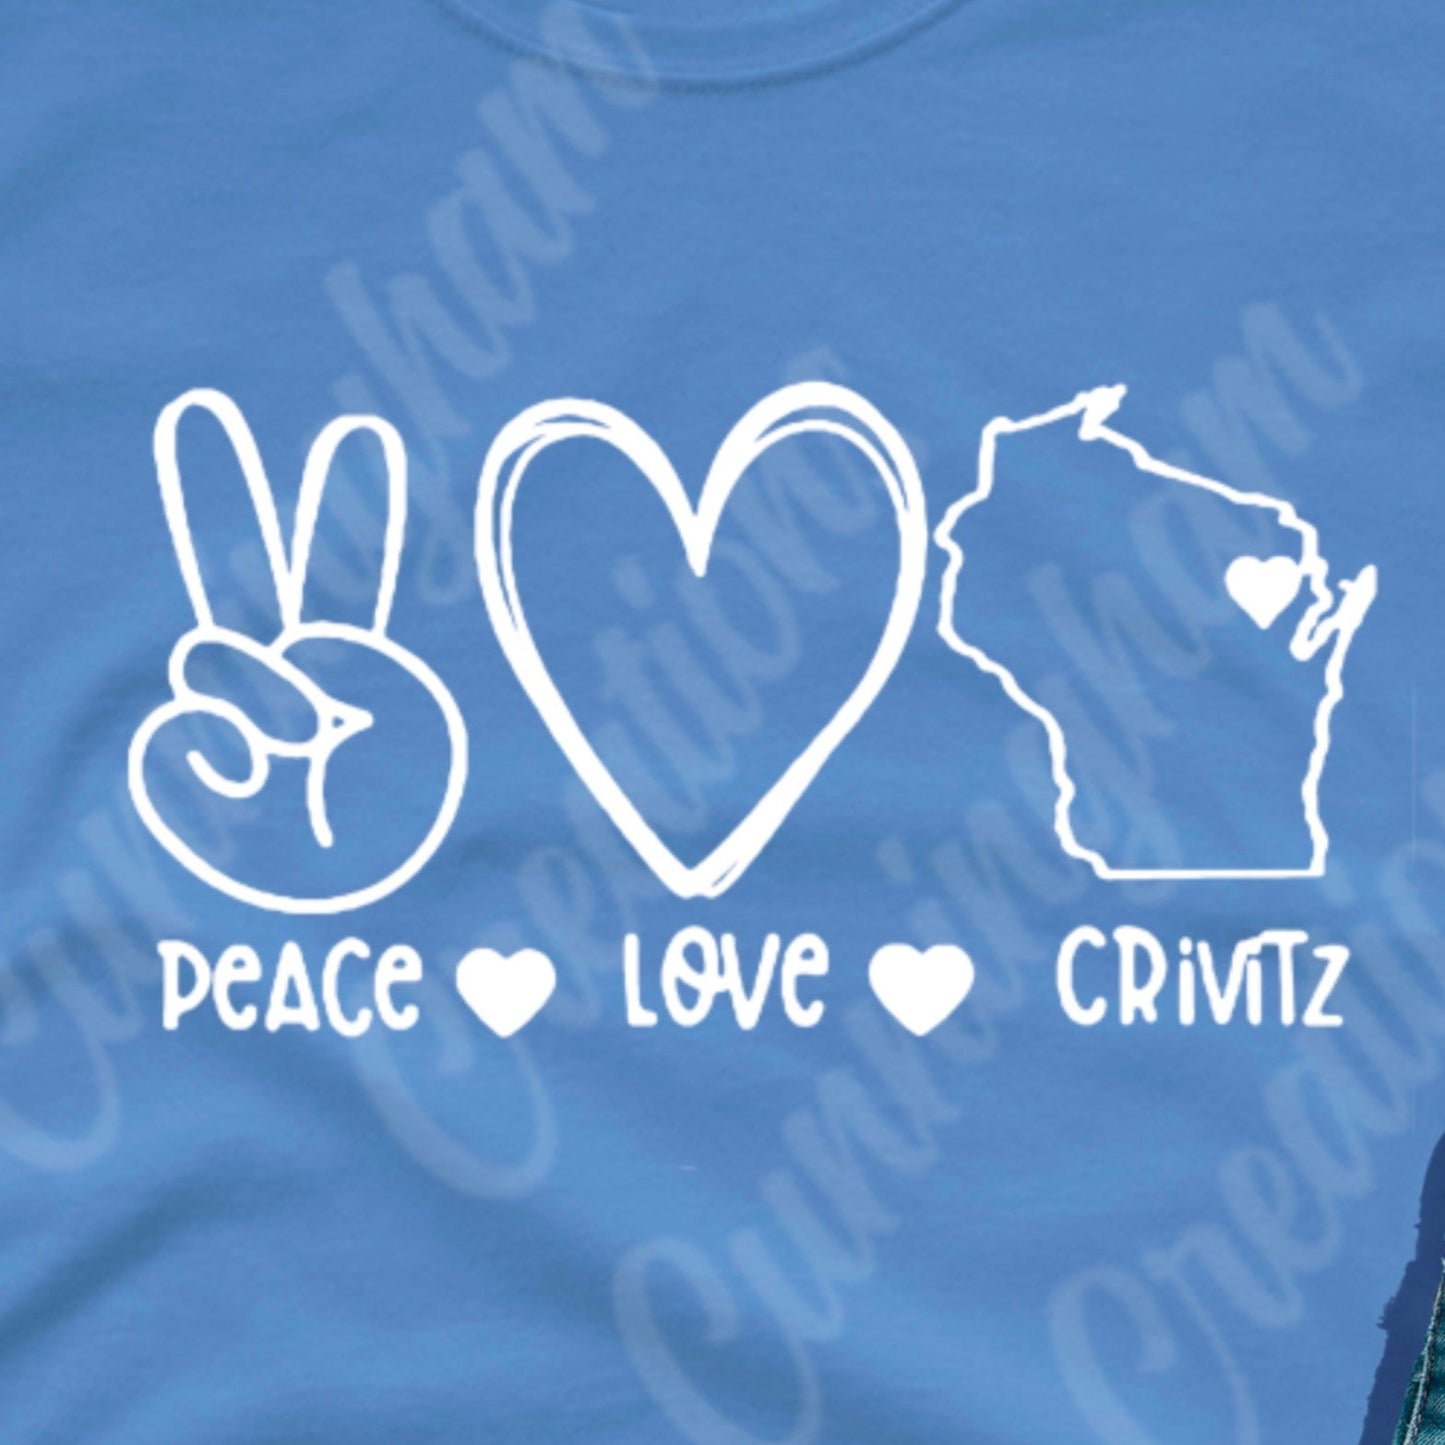 Peace Love Crivitz